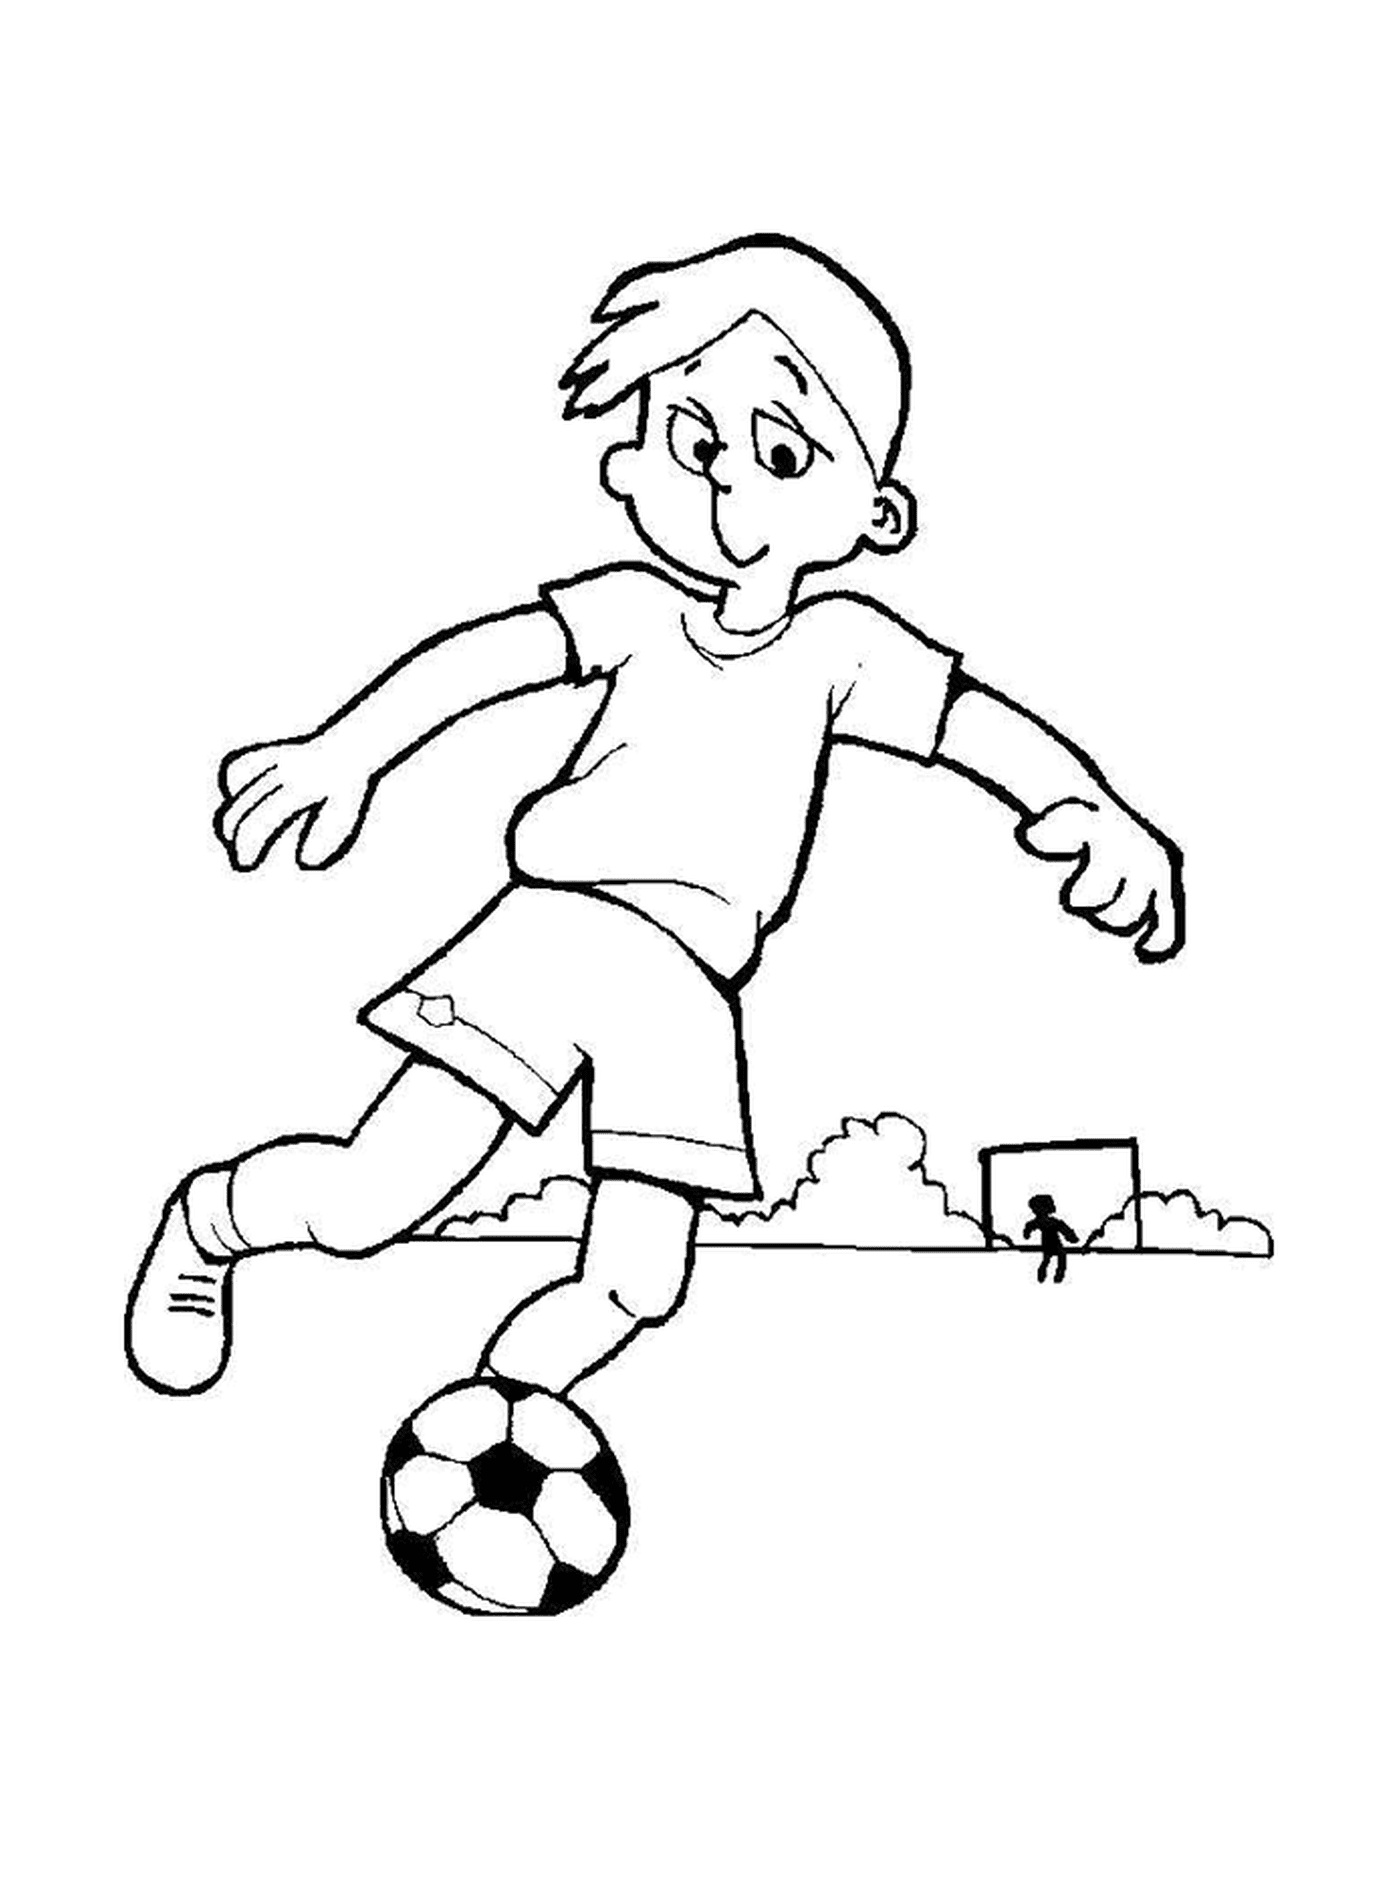   Un enfant qui joue au foot 